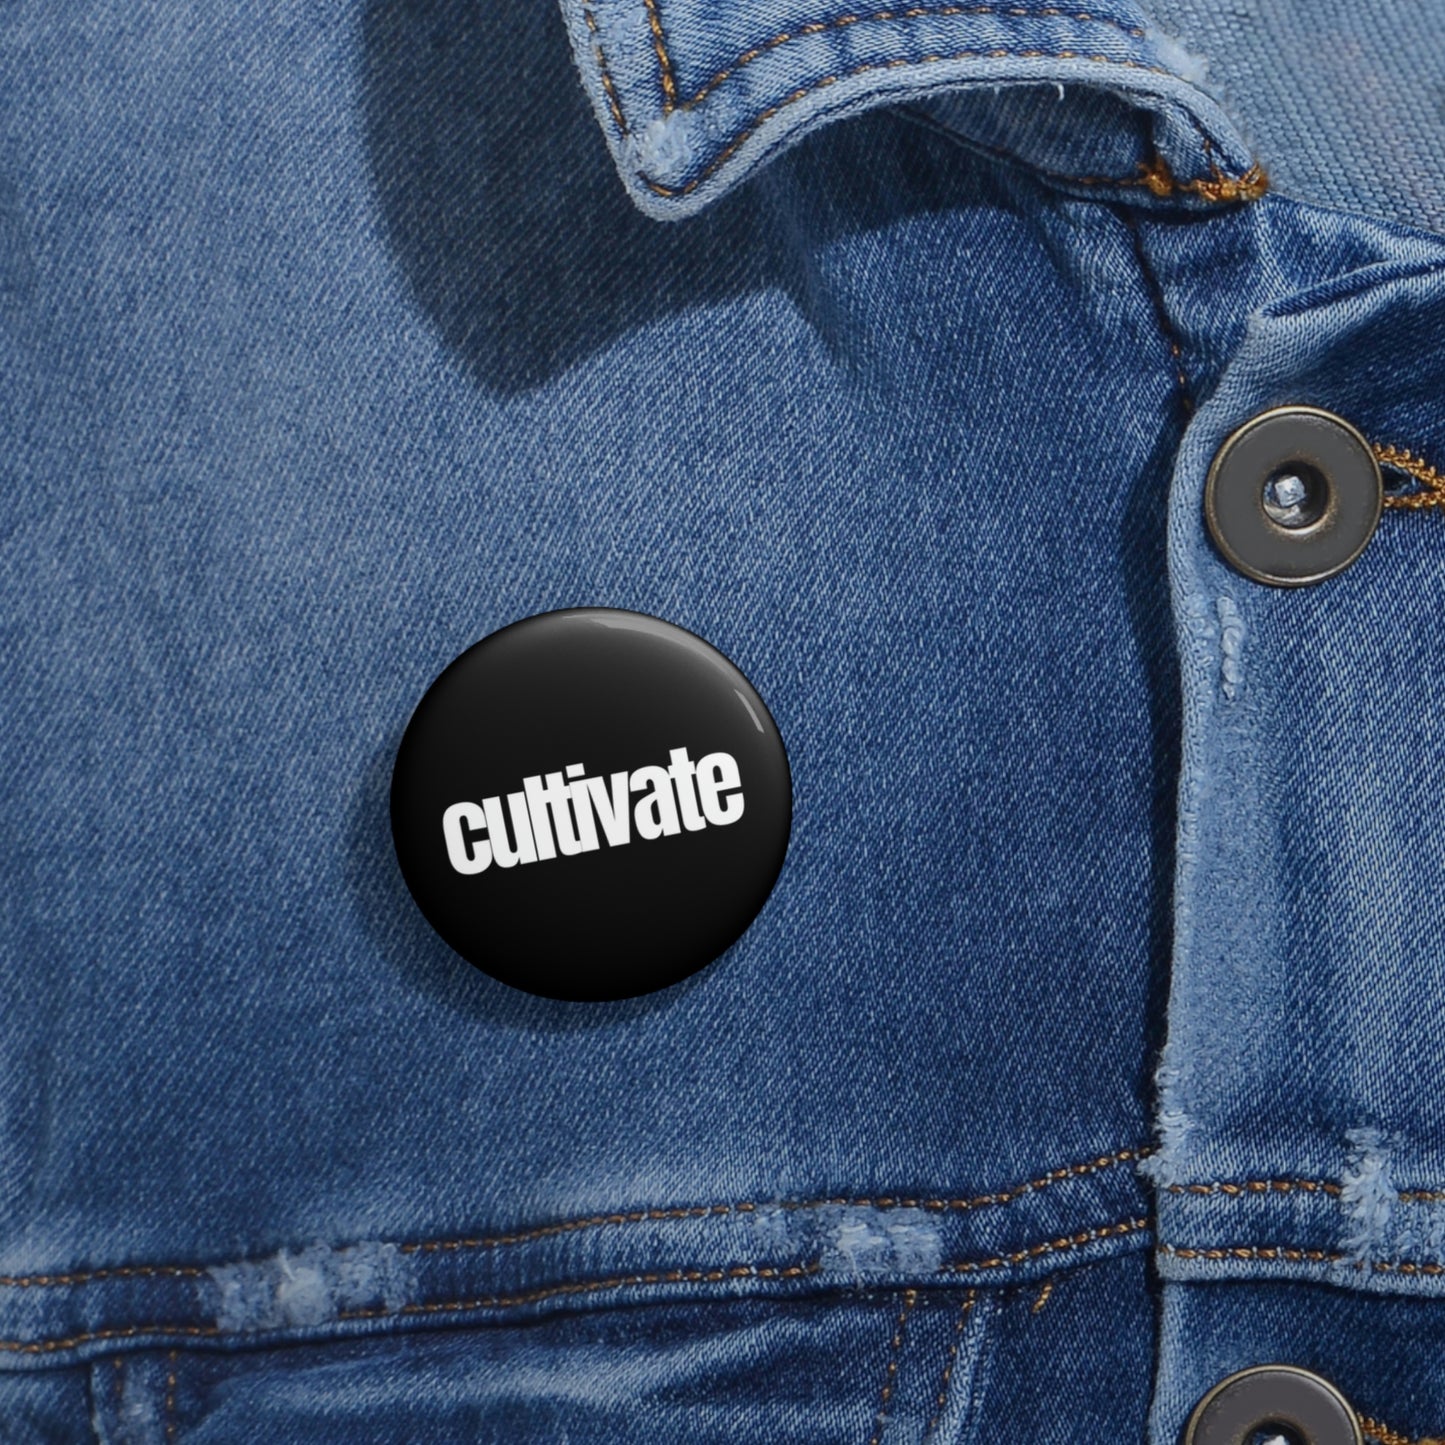 "cultivate" Pin Button - white